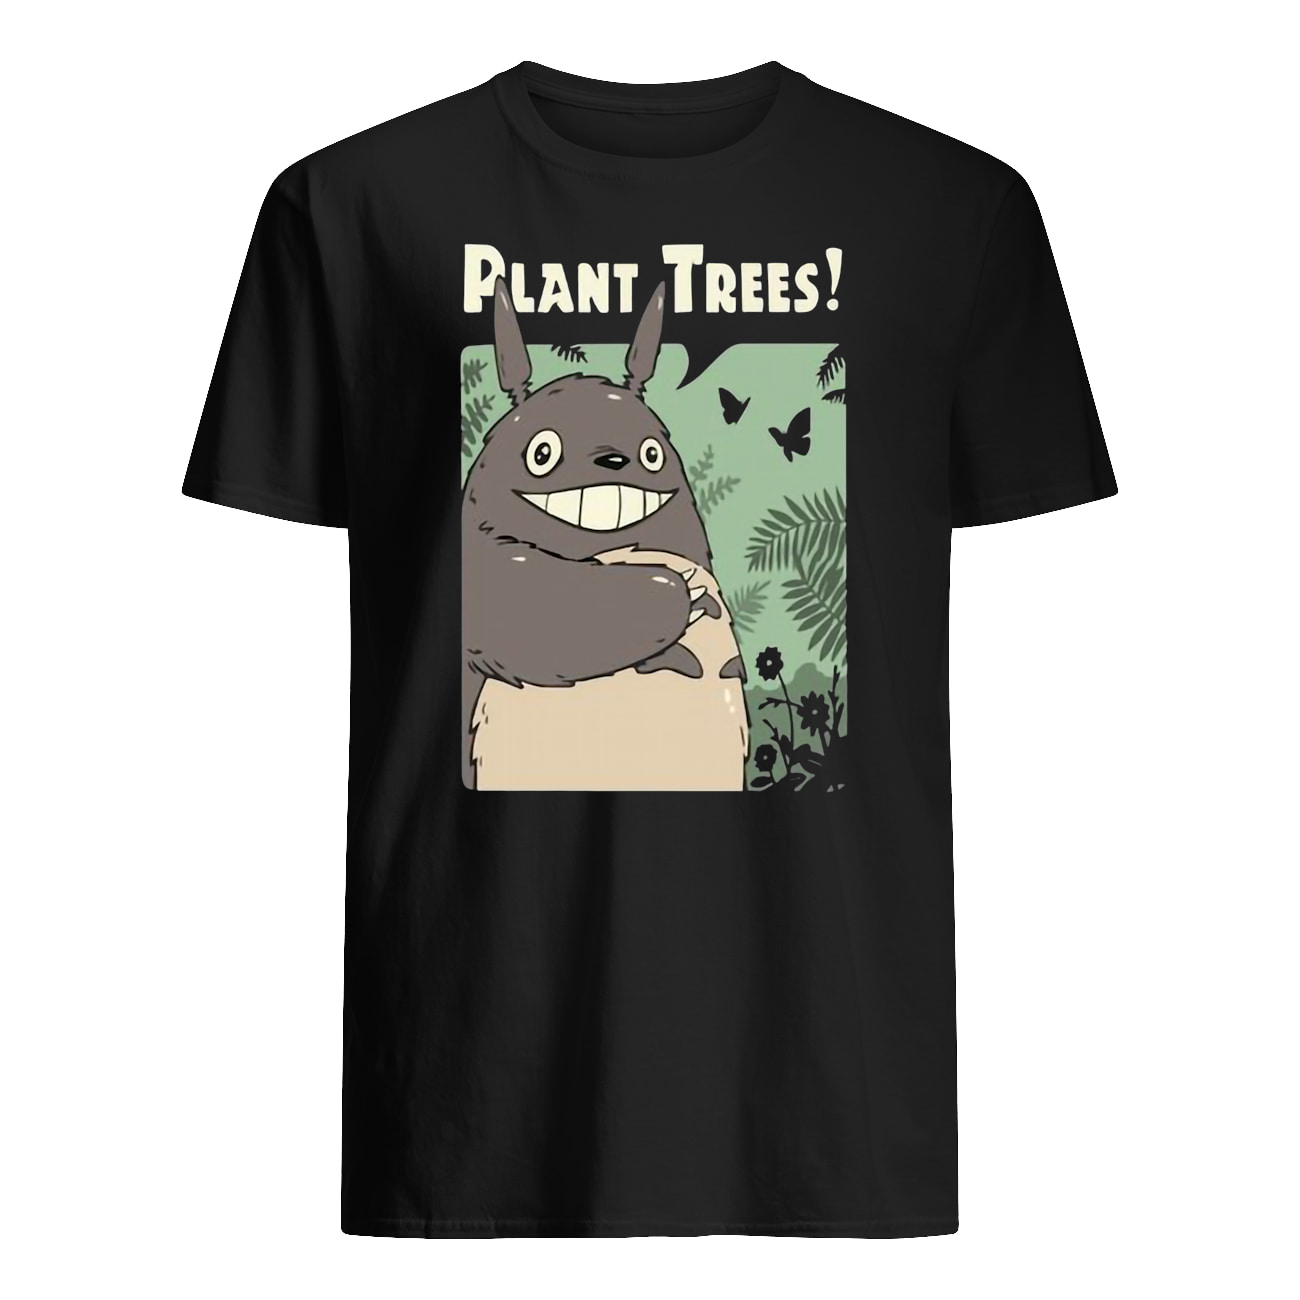 Totoro studio ghibli plant trees mens shirt